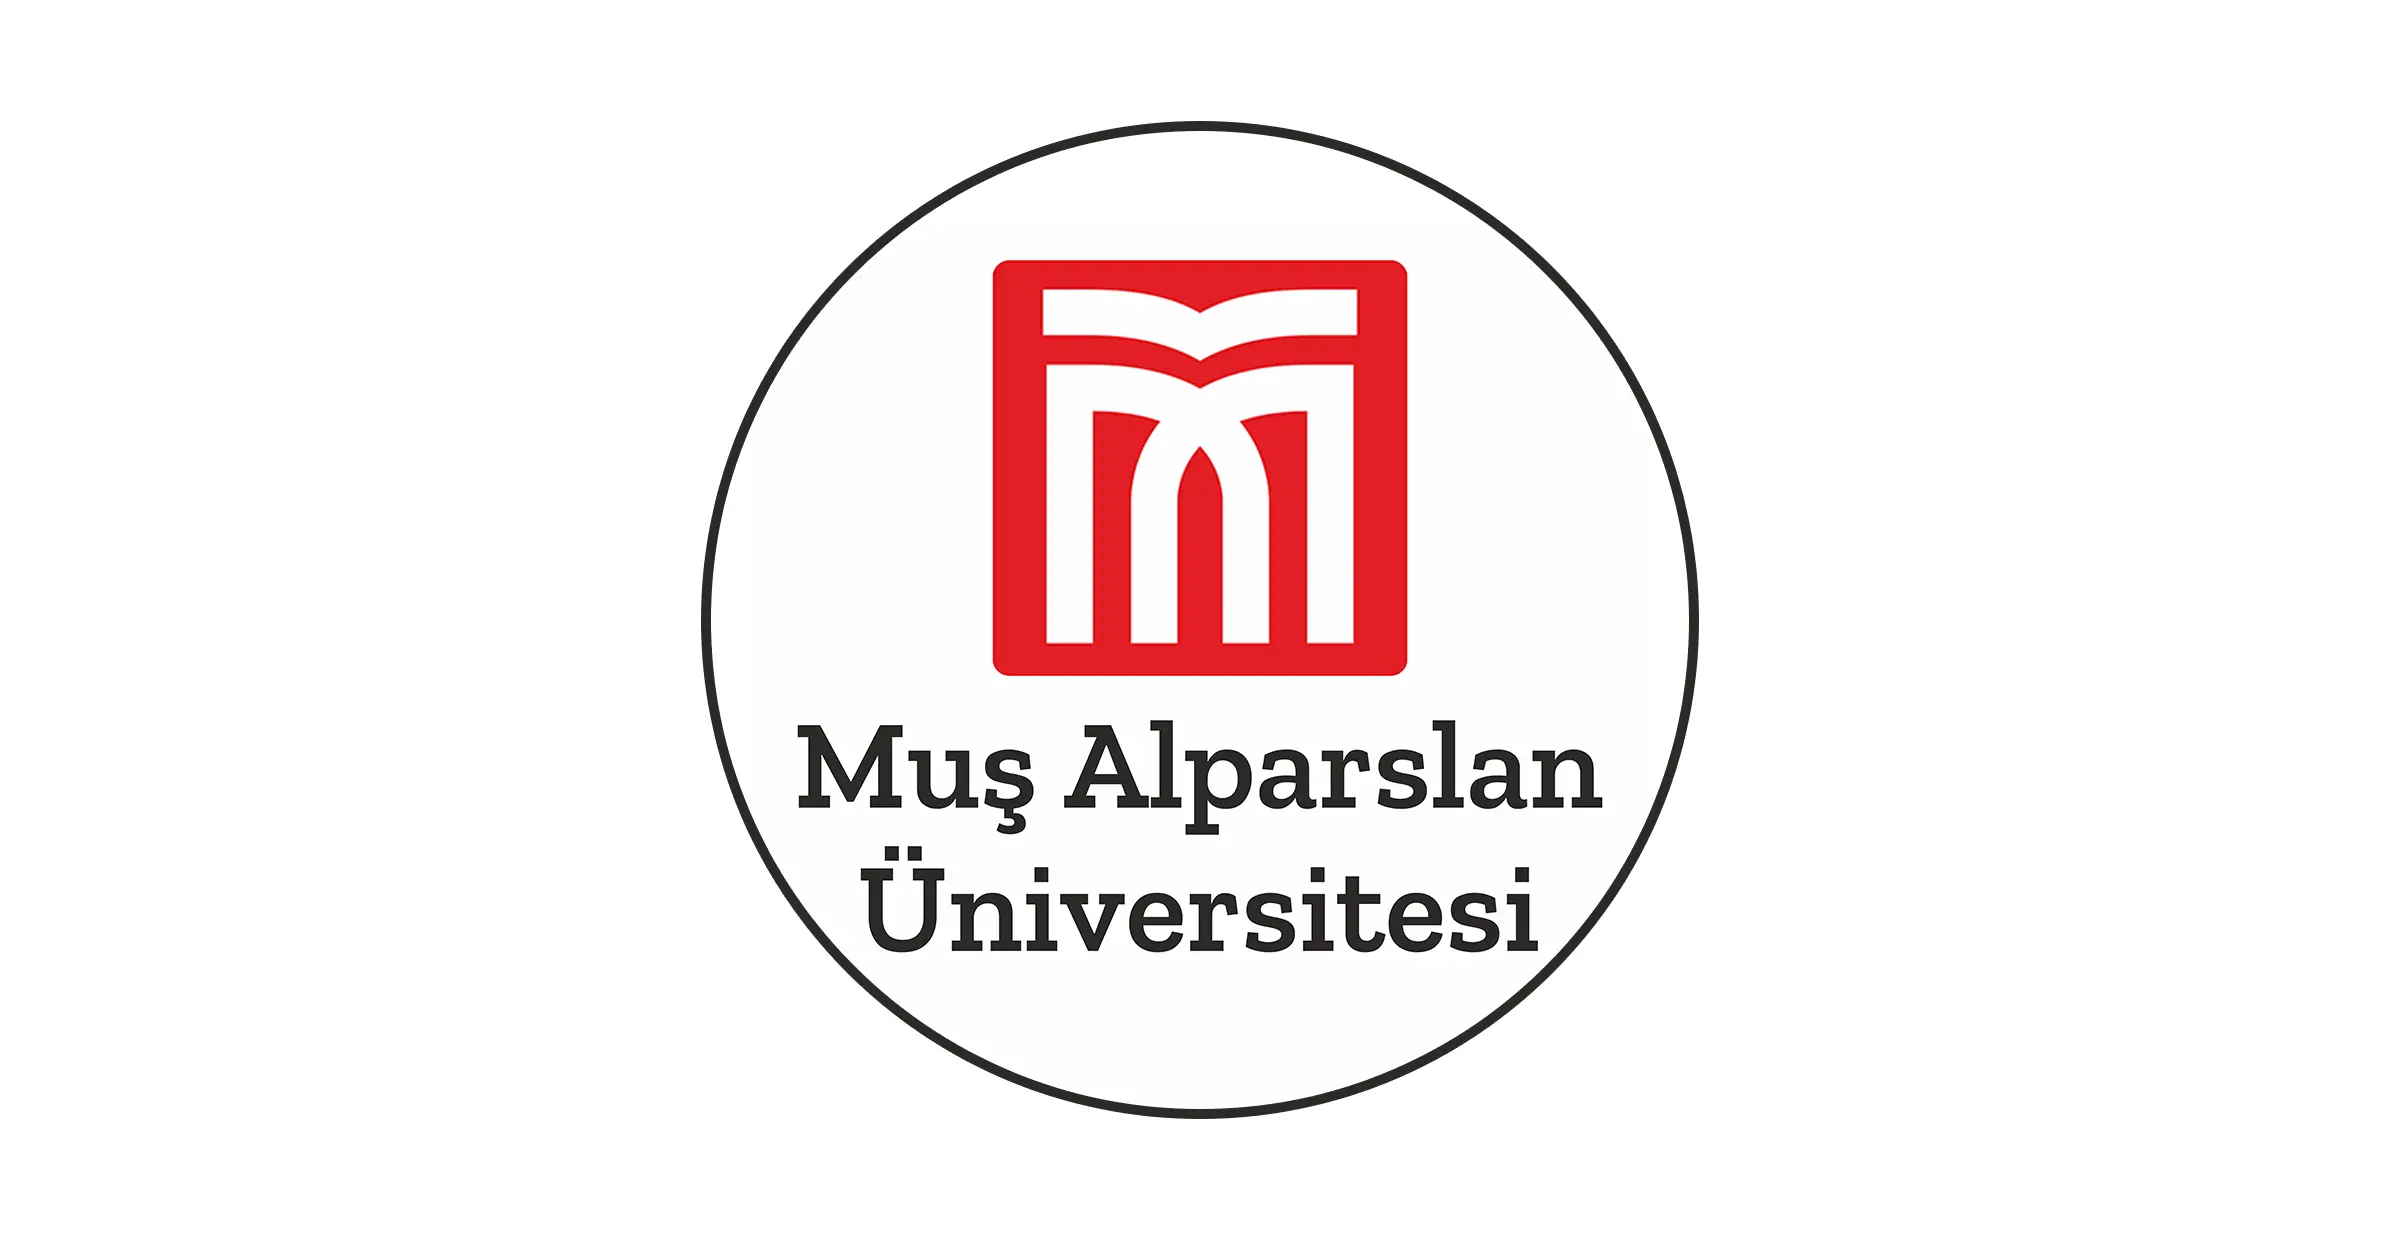 في عام 2007 بدأت جامعة موش البارسلان Muş Alparslan Üniversitesi حياتها التعليمية بأربع وحدات أكاديمية: كلية التربية المدرسة المهنية للعلوم